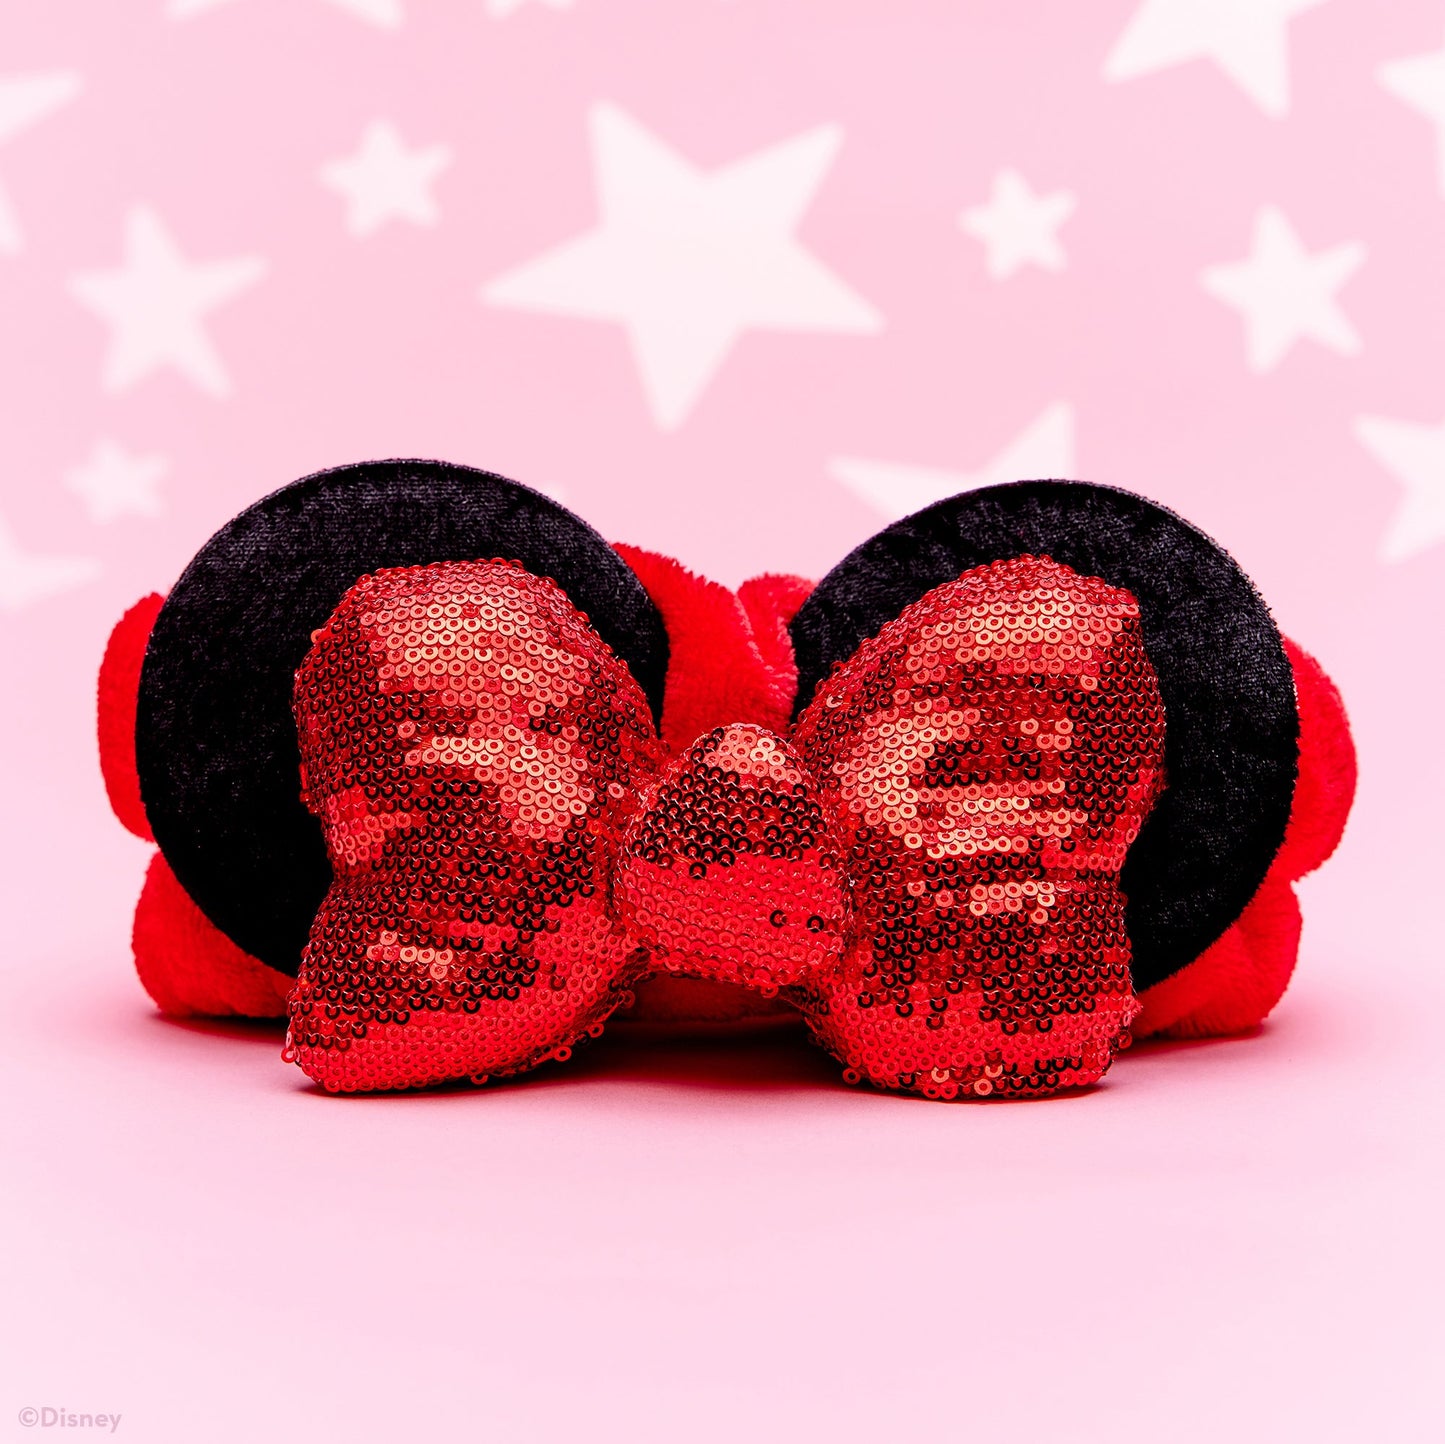 The Crème Shop | Disney: 3D Teddy Headyband™ In "Ruby Glitz" Headbands The Crème Shop x Disney 